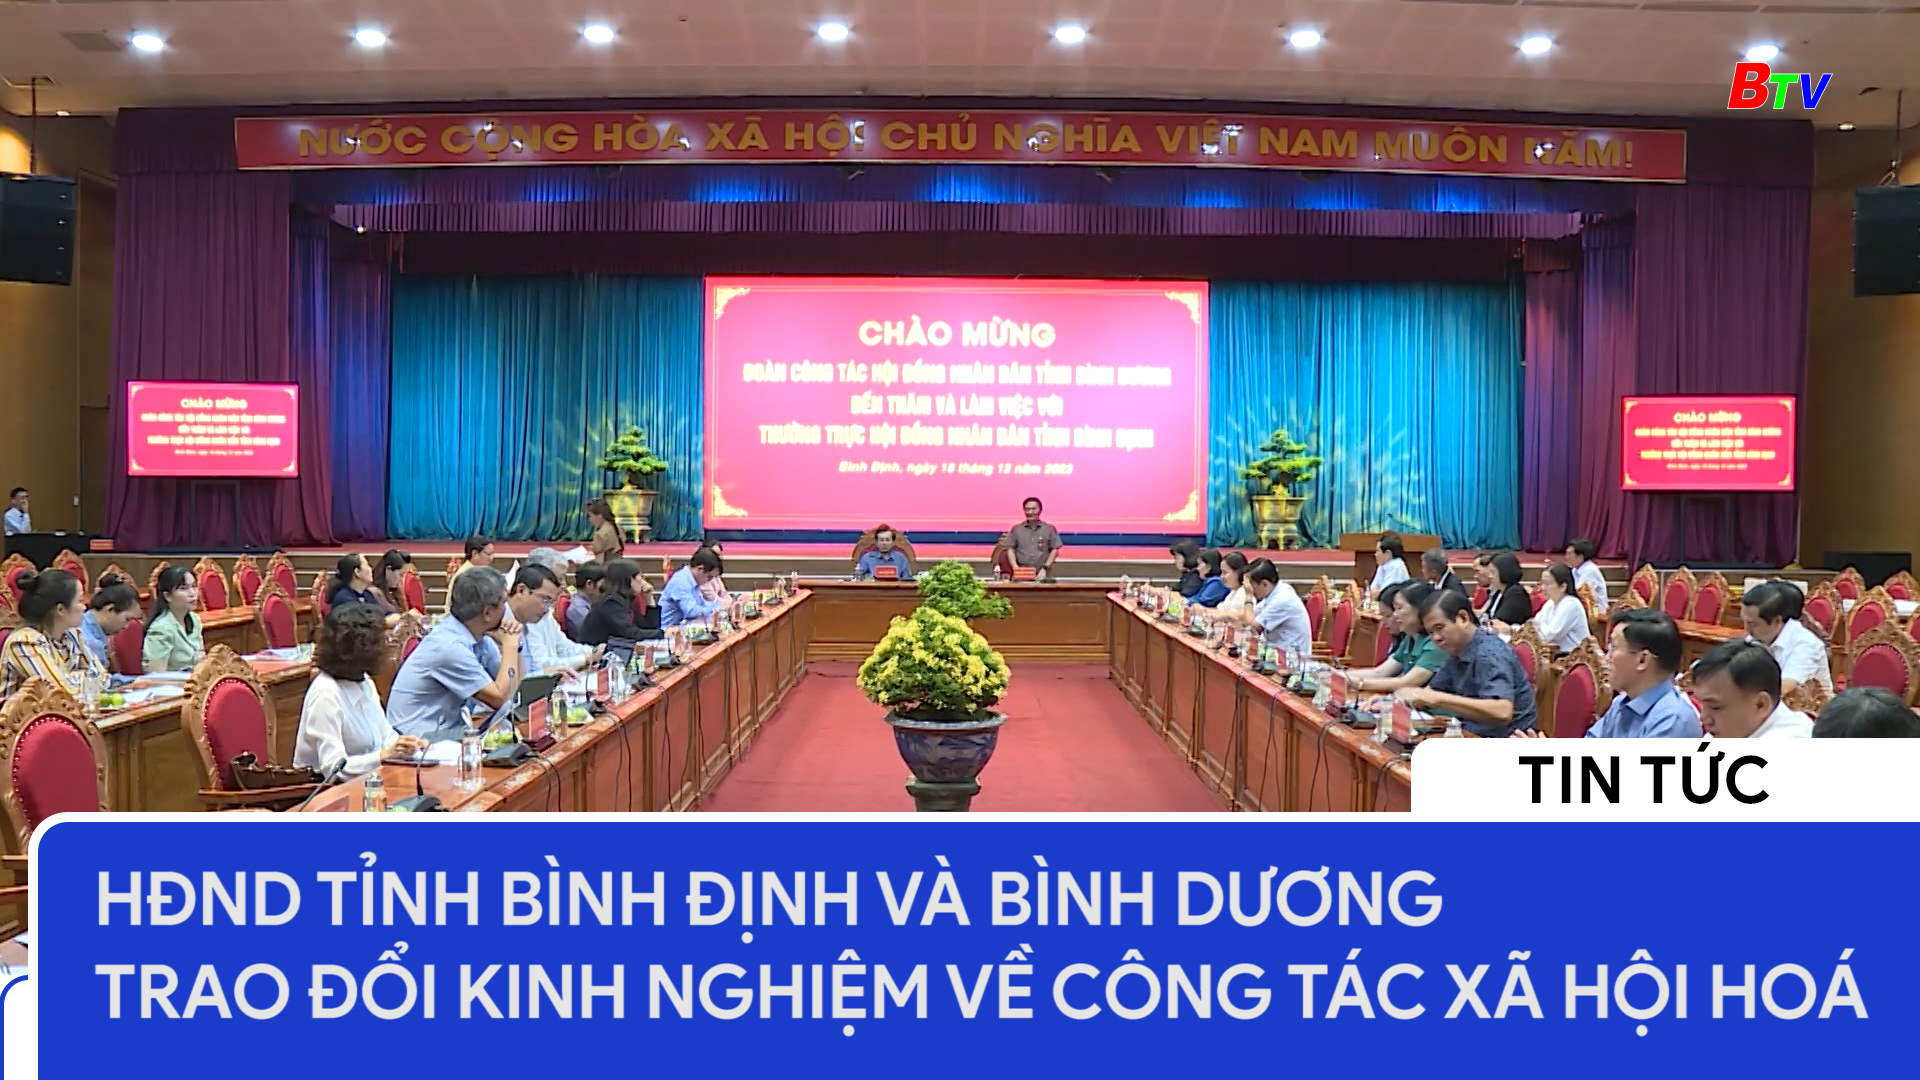 HĐND tỉnh Bình Định và Bình Dương trao đổi kinh nghiệm về công tác xã hội hoá